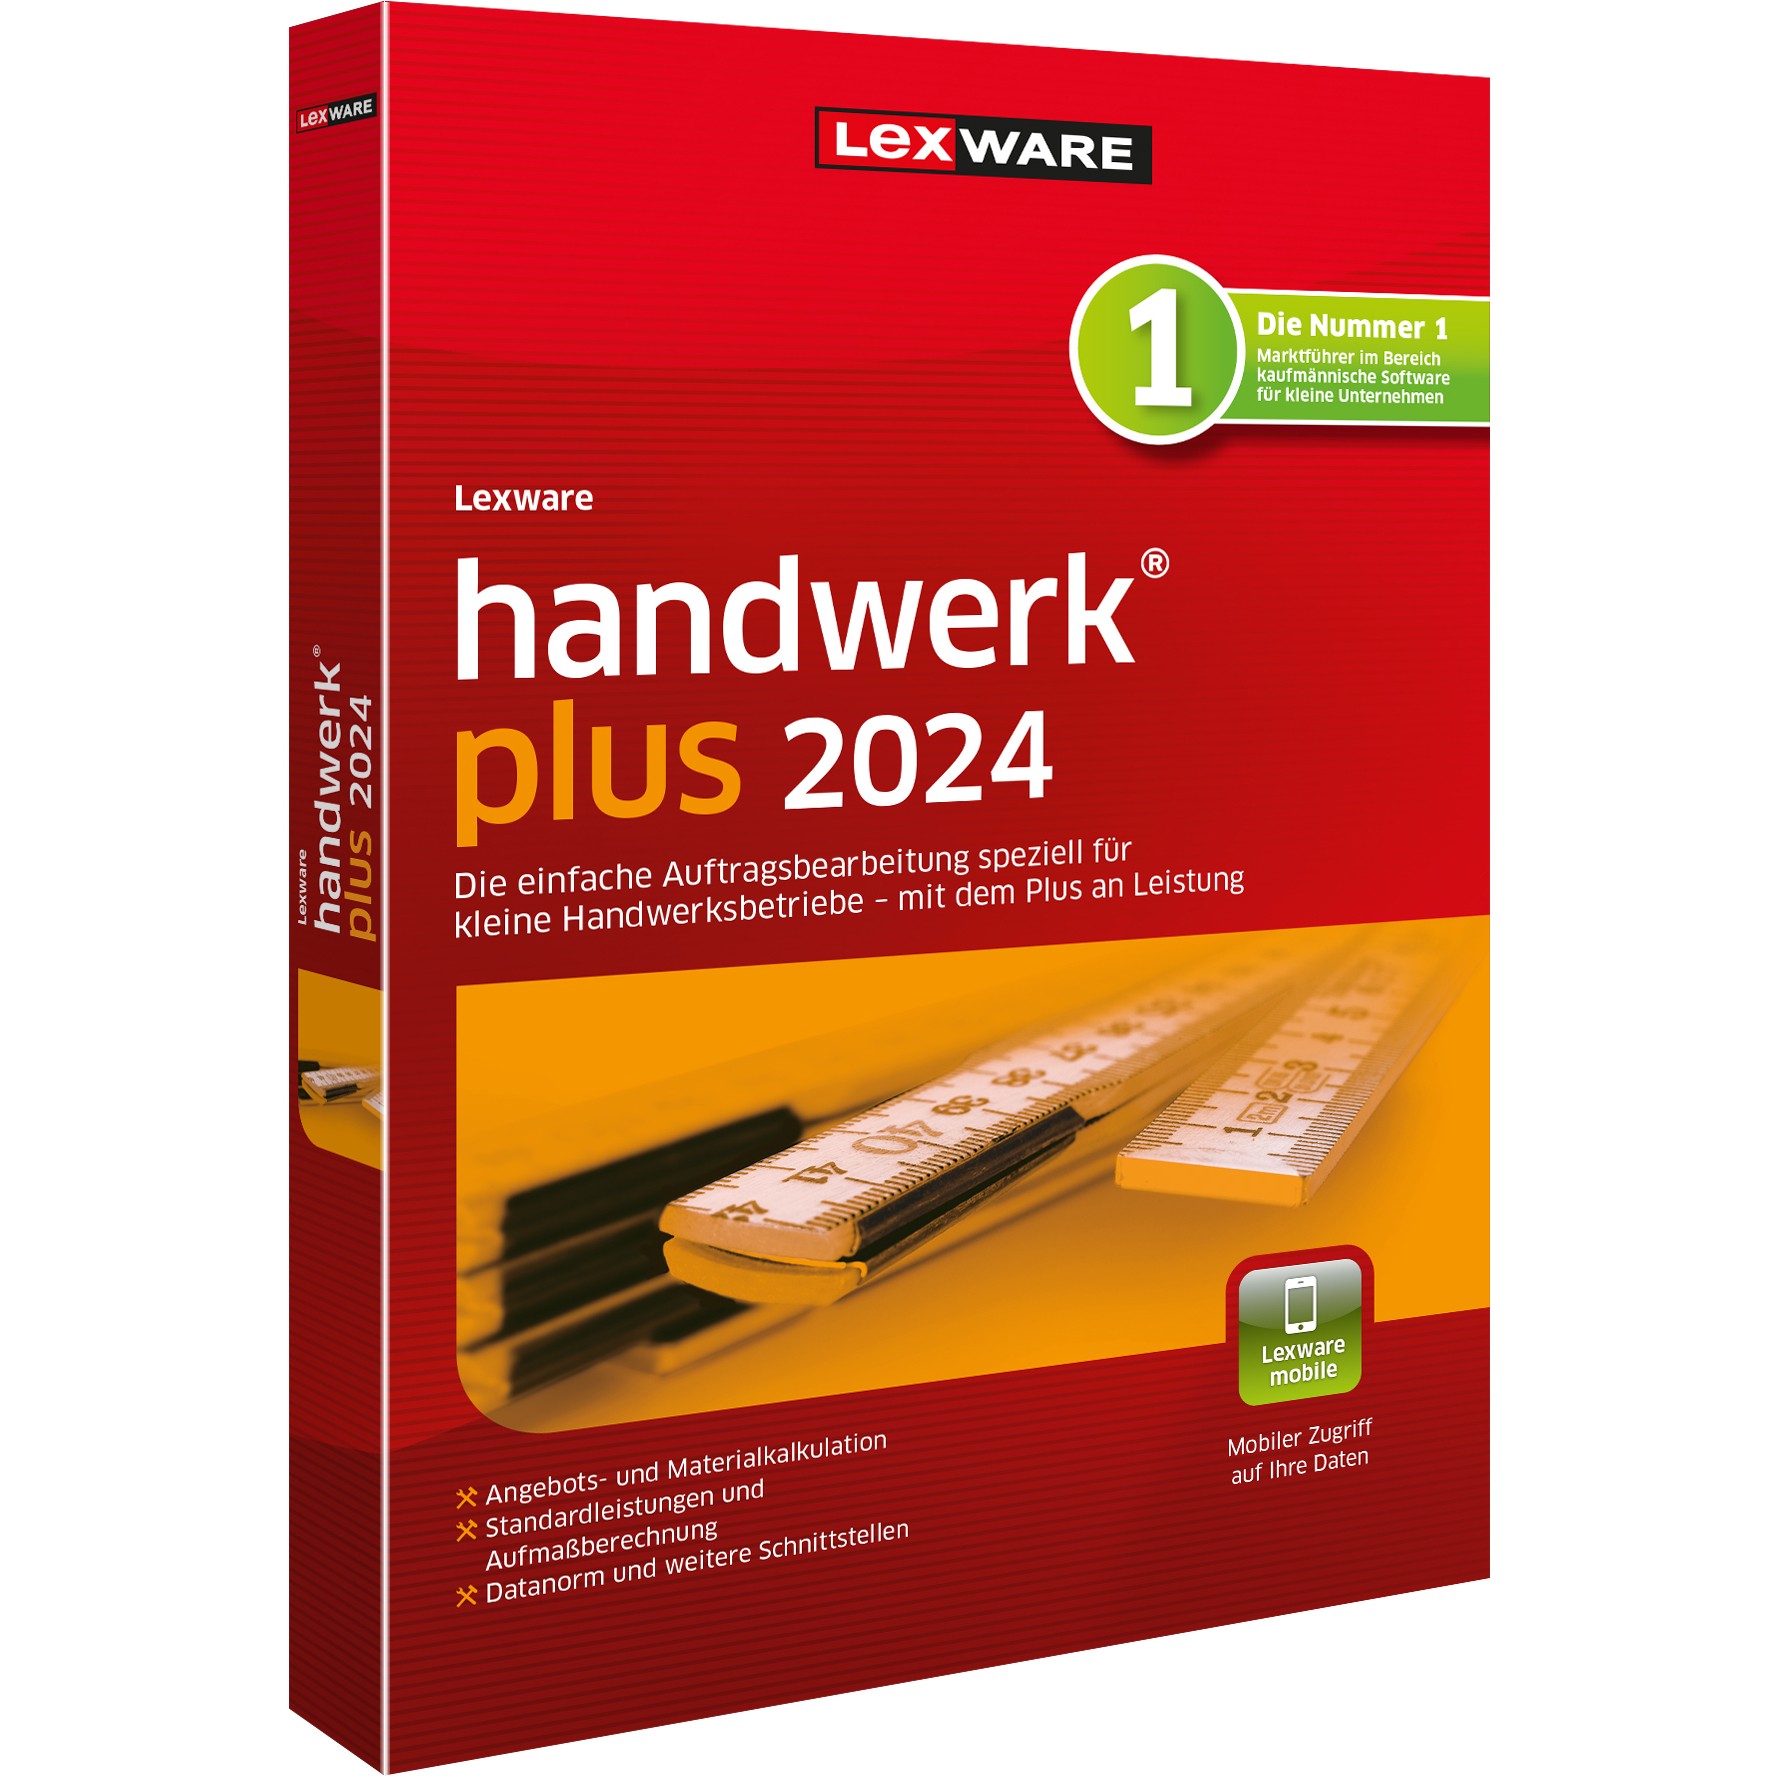 LEXWARE handwerk plus 2024 - Abo [Download]